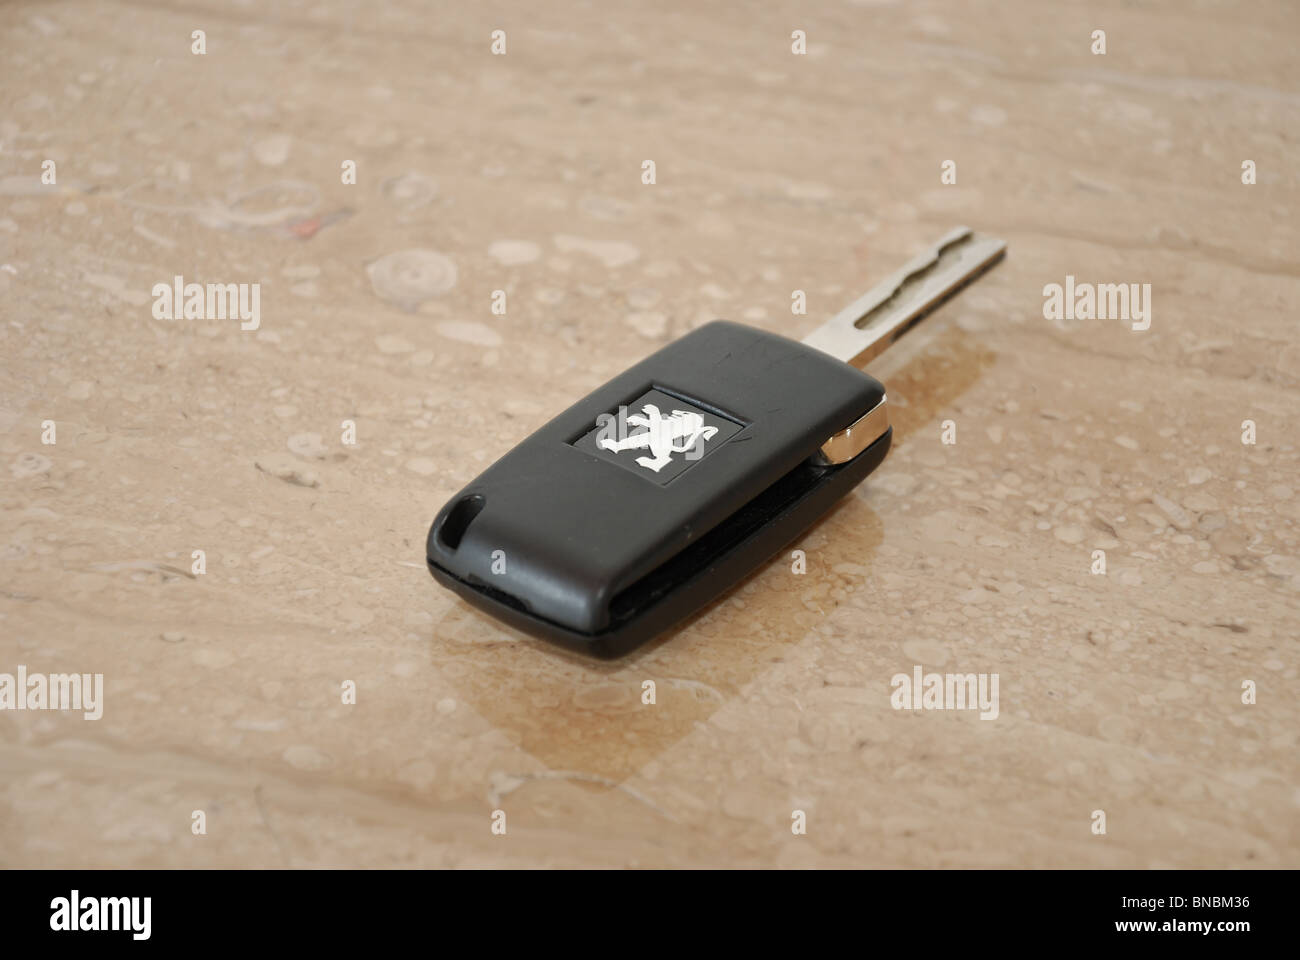 Des clés de voiture, clés de voiture (Peugeot) avec logo Peugeot sur du marbre Banque D'Images